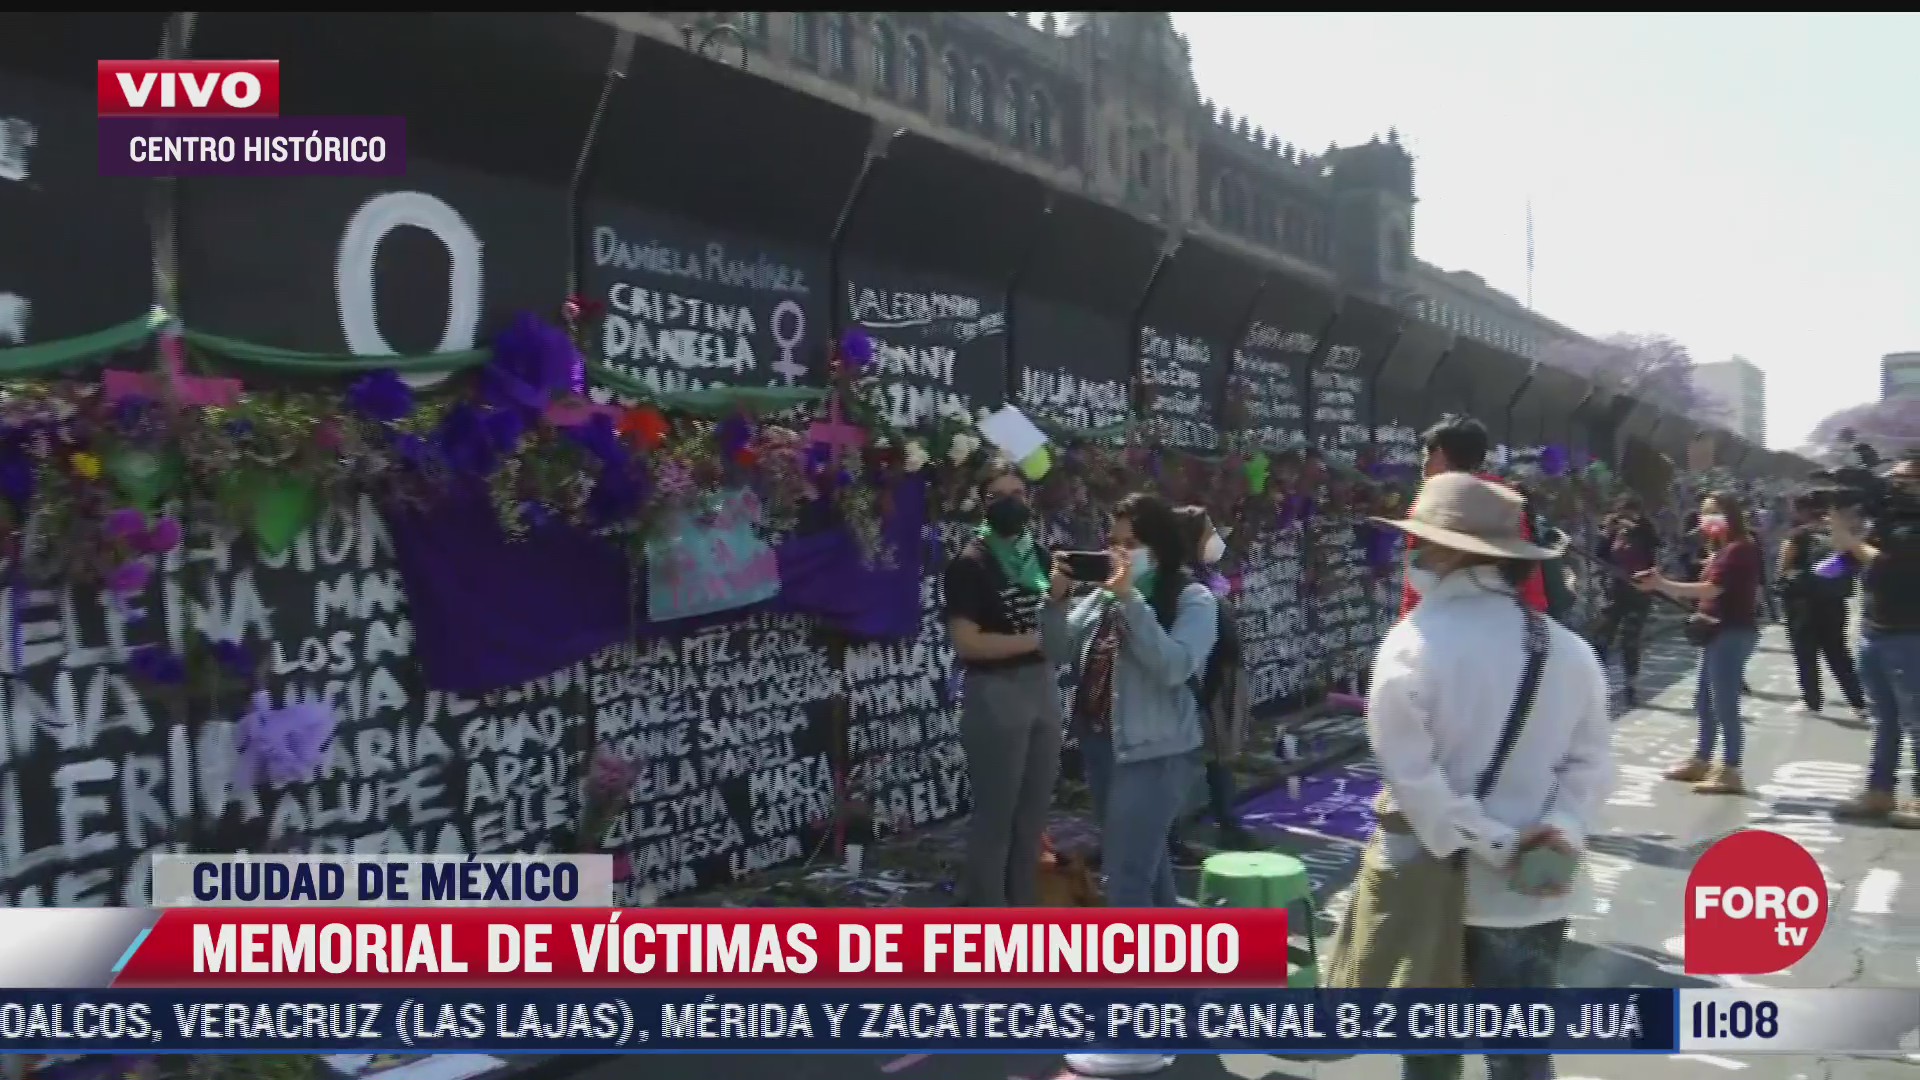 llegan mujeres al memorial de victimas de feminicidio en el centro historico